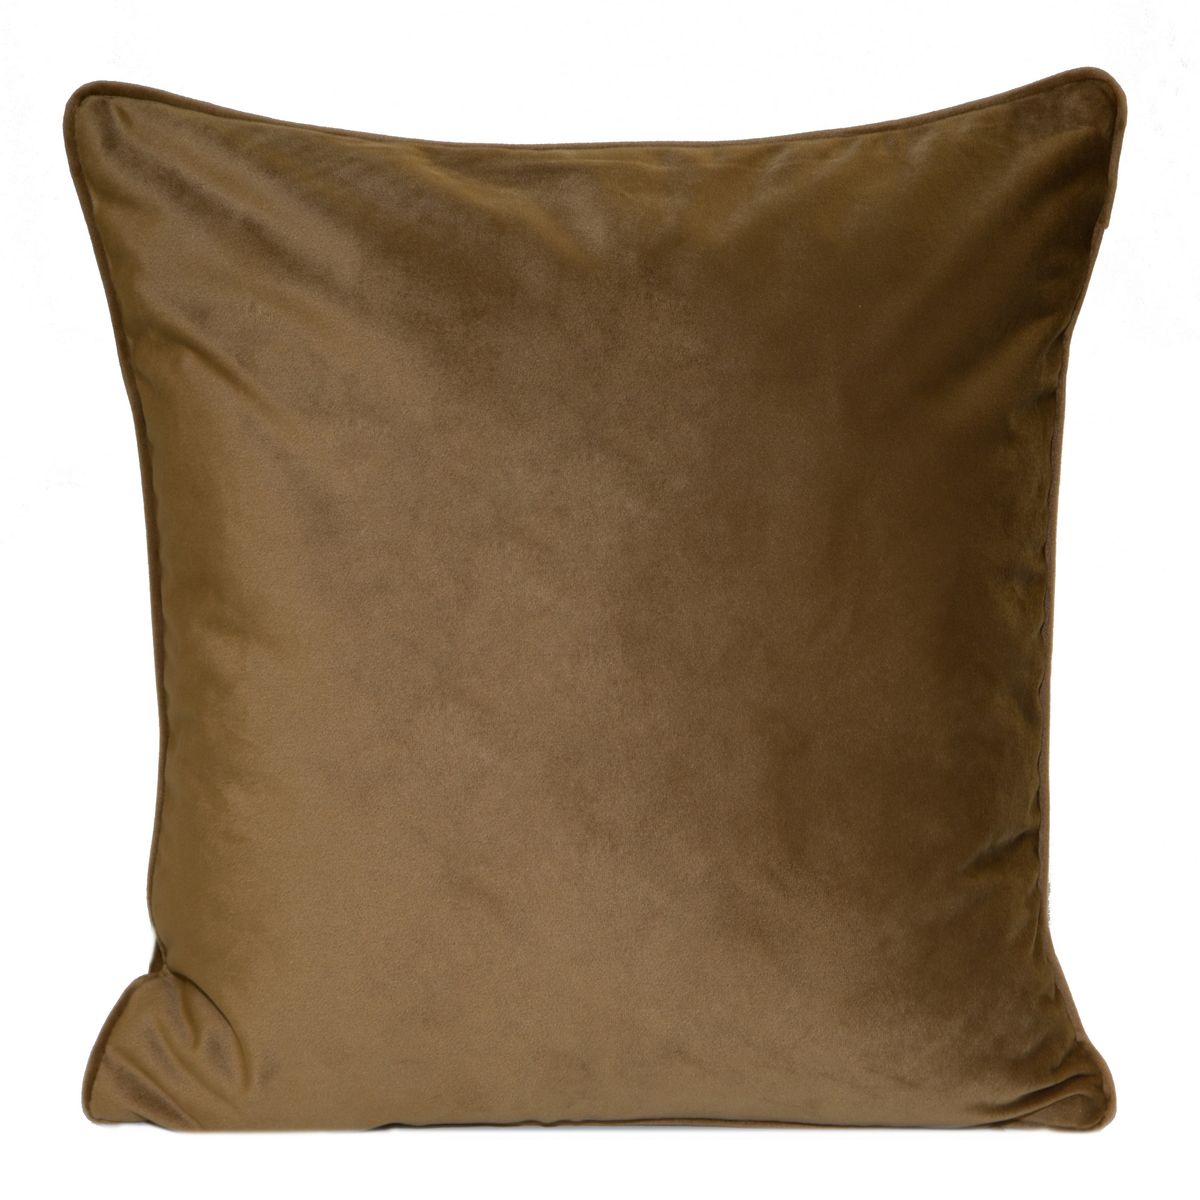 Dekoratyvinė aksominė pagalvėlė “Sibel” medus, 2 vnt.